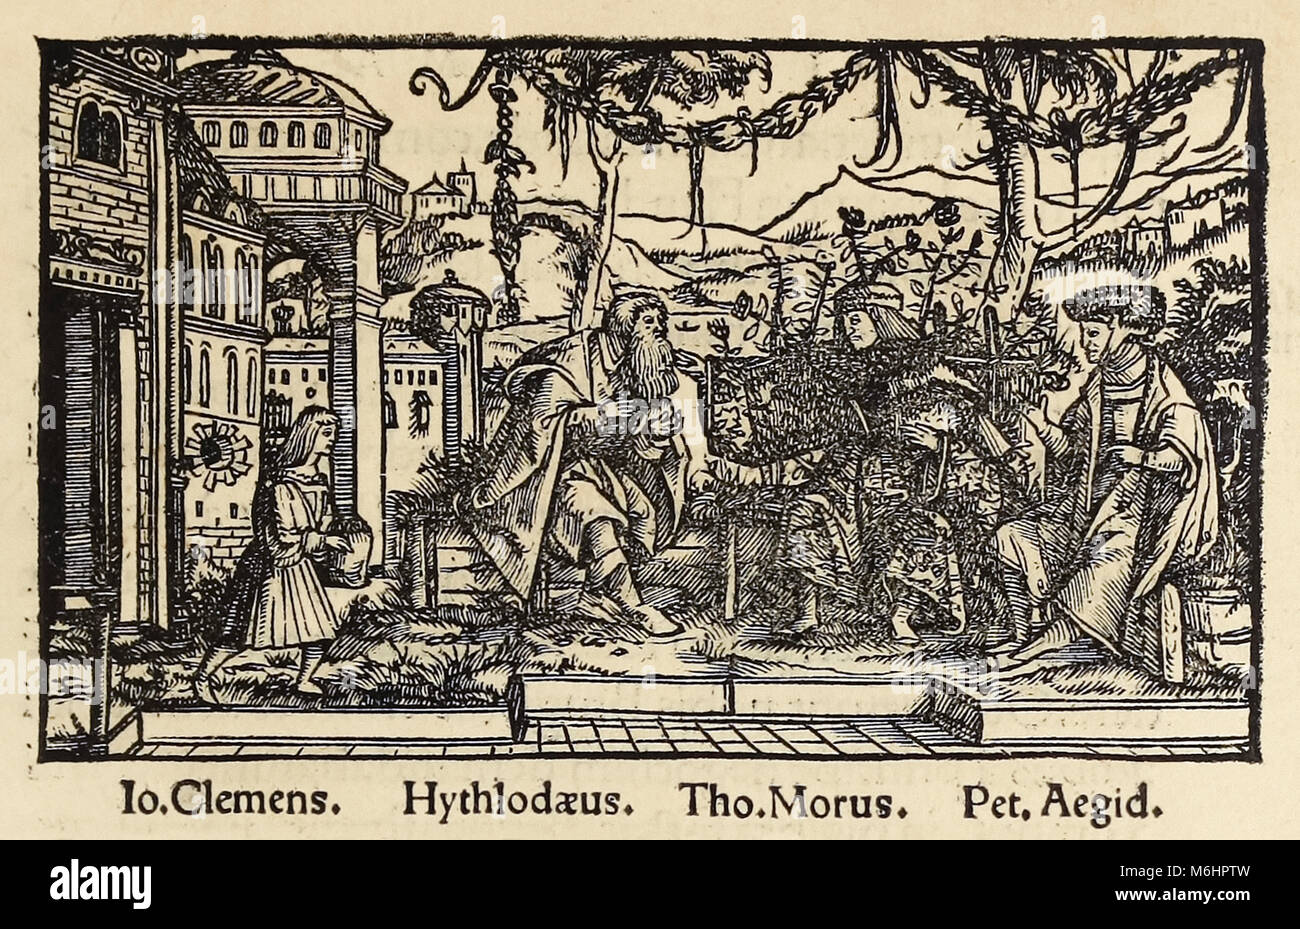 Holzschnitt von 1518 dritte Ausgabe der "Utopie" von Sir Thomas More (1478-1535) in Basel veröffentlichte Übersicht der Autor im Gespräch mit den Protagonisten Raphael Hythloday über die ideale Gesellschaft, die er auf der Insel Utopia gefunden. Holzschnitt von Hans Holbein der Jüngere (1497-1543). Weitere Informationen finden Sie unten. Stockfoto